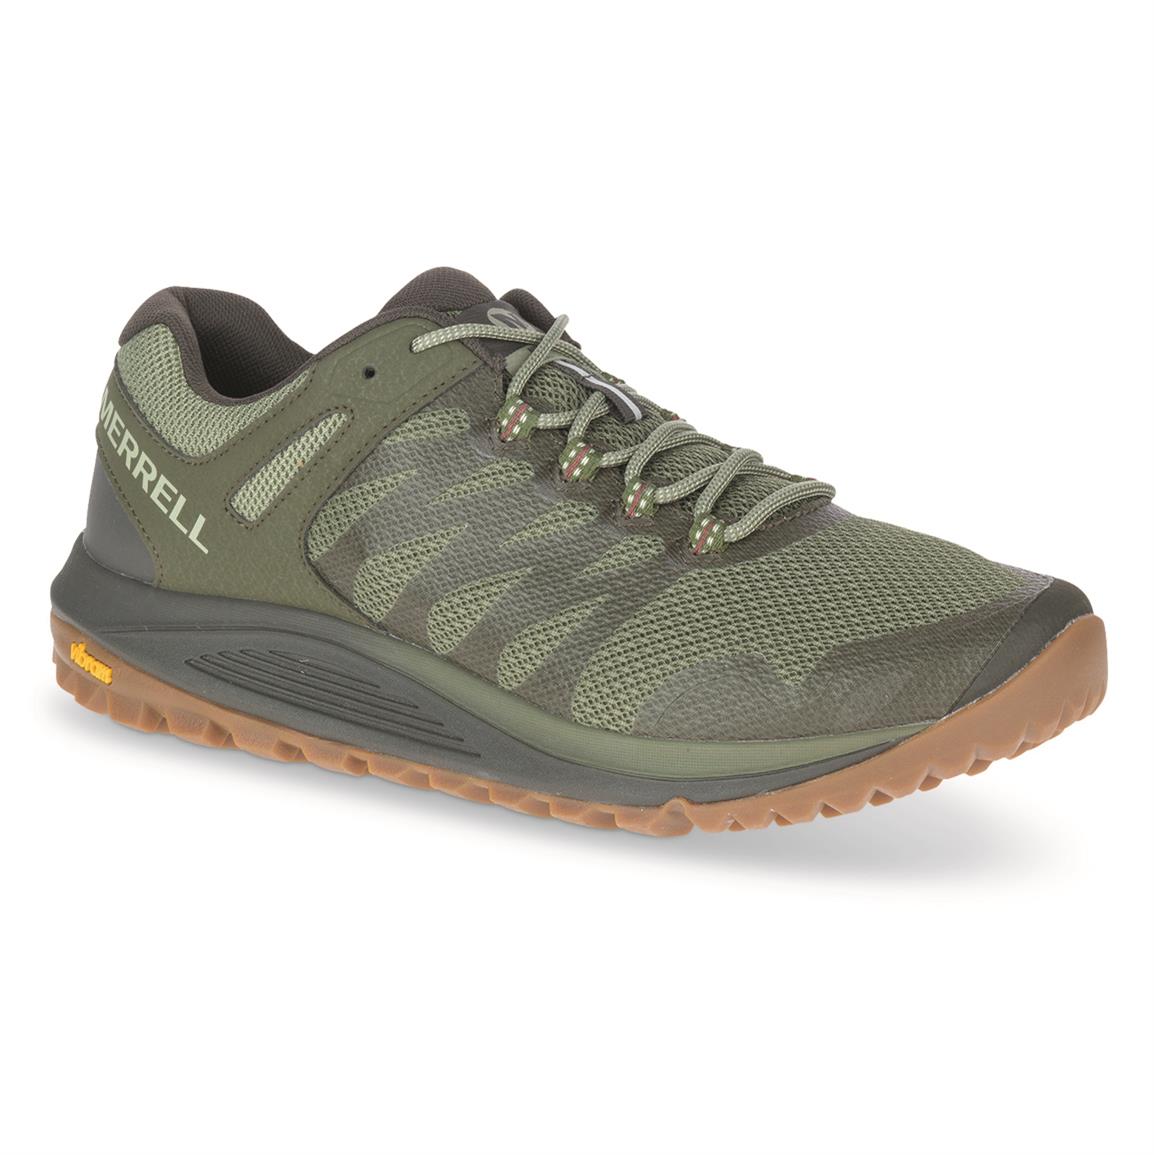 Merrell Men's Nova 2 Trail Running Shoes, Olive